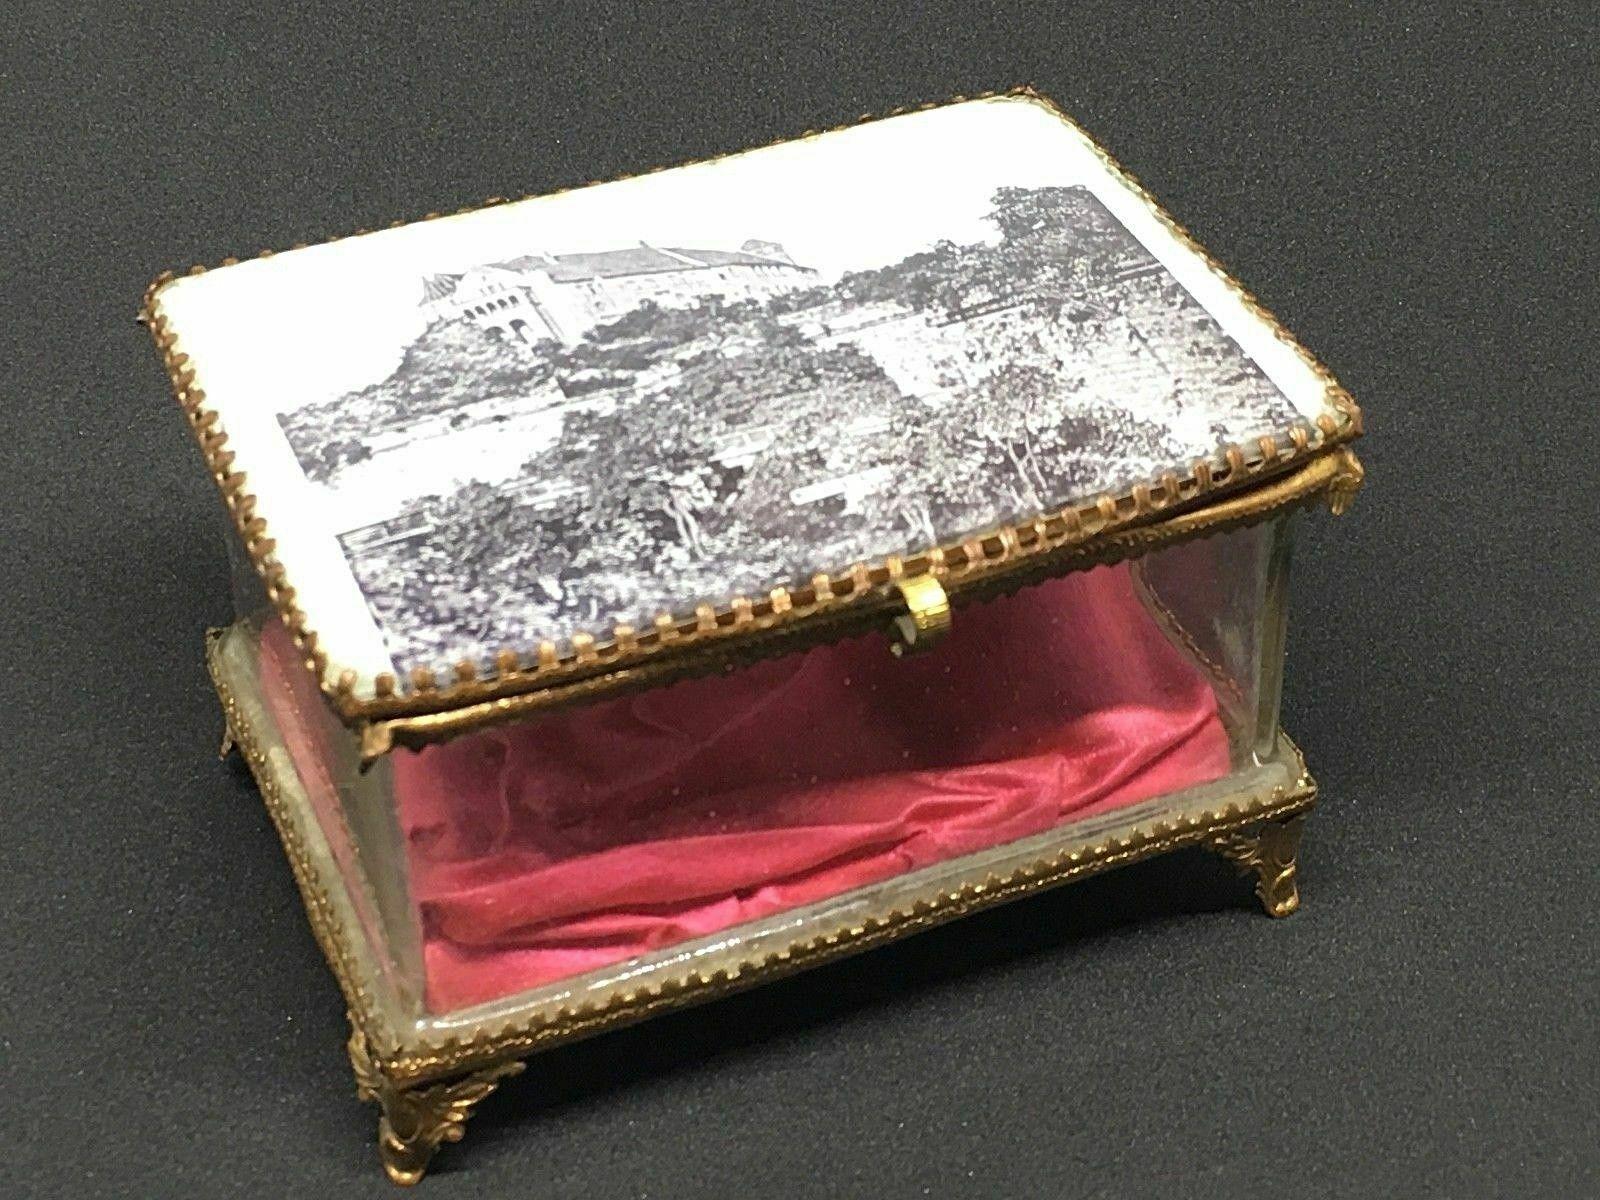 Une magnifique boîte à bijoux en verre avec quelques ornements en bronze doré. Le couvercle à charnière présente une vue de la ville du château de Nuremberg. Aucune restauration n'a été effectuée sur cette charmante petite boîte à bijoux, qui reste